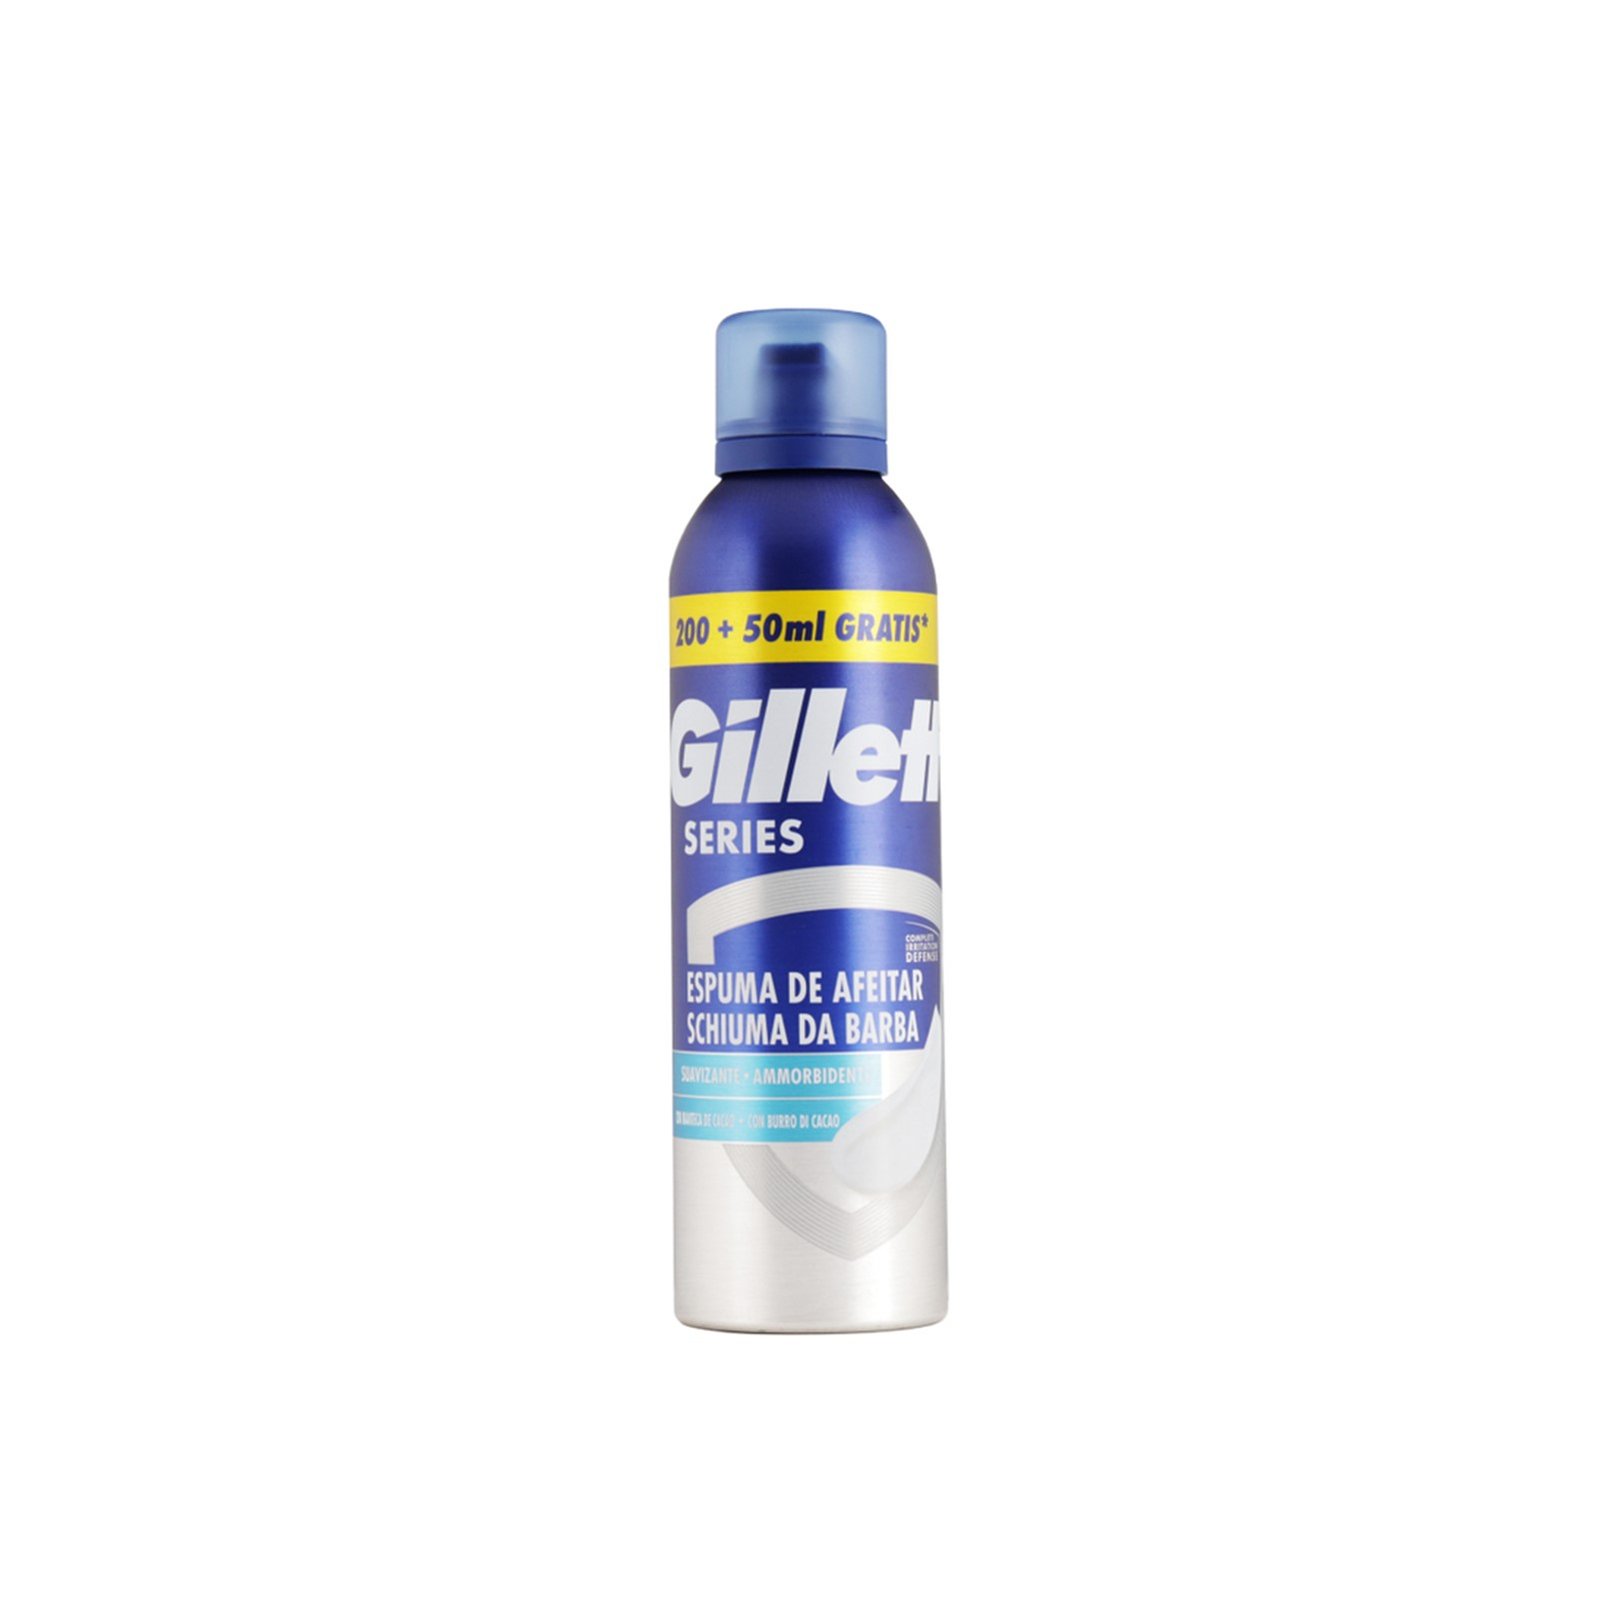 Gillette Series Smoothing Shaving Foam 250ml (8.4 fl oz)